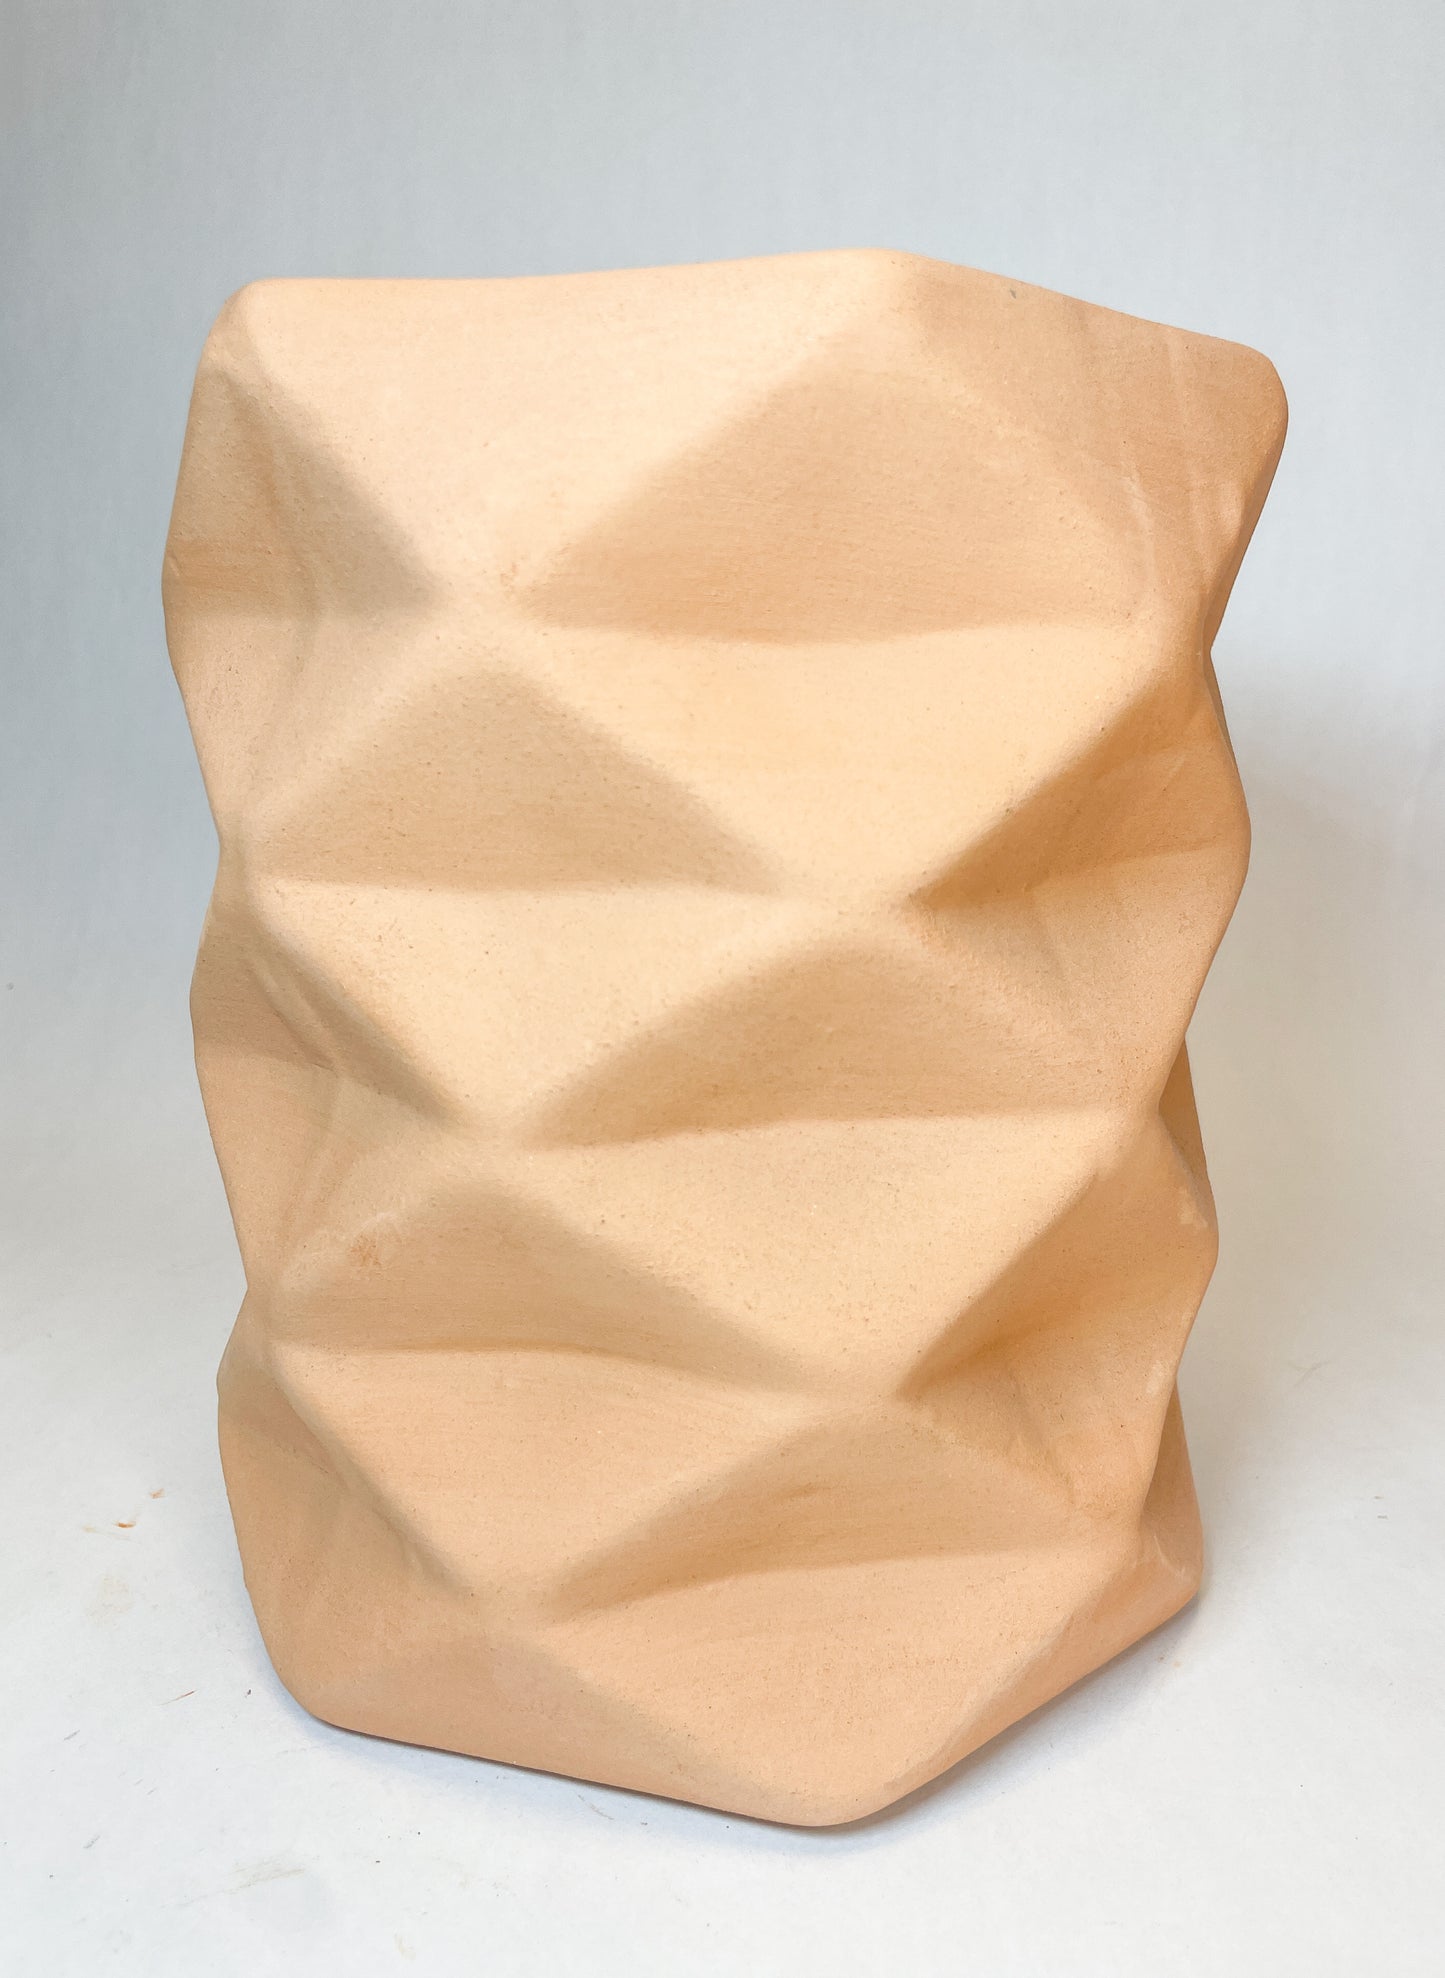 Terracotta Geometric Planter 8 Inches Flower Vase Terracotta Vase